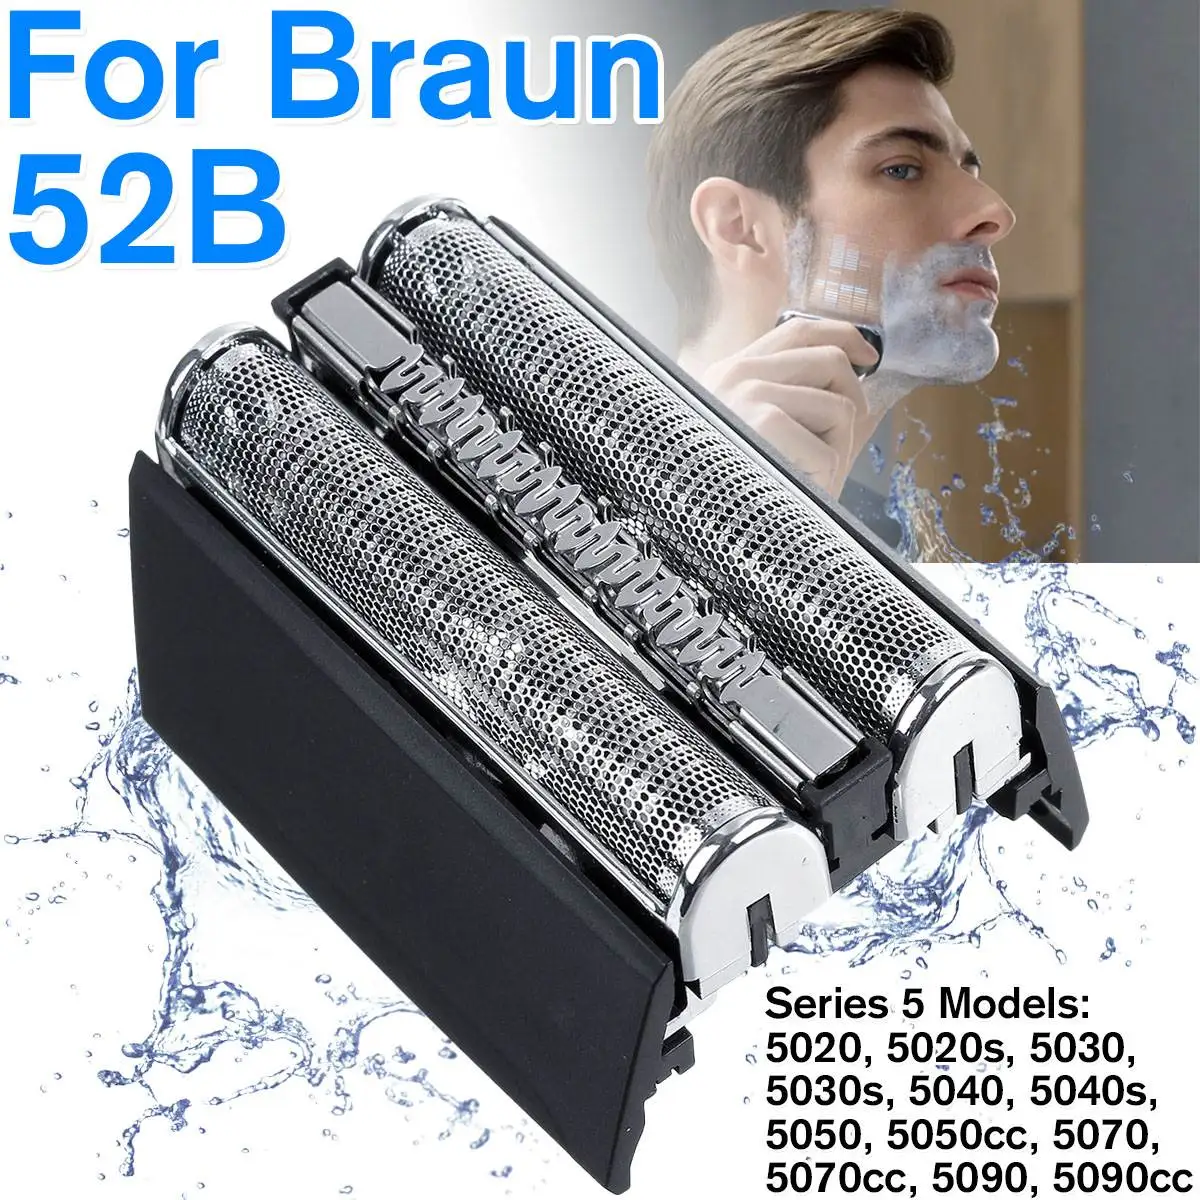 Сменная бритва из фольги, 1 шт., кассета для Braun 52B Series 5, электробритва 5030, 5040, 5050, 5070cc, 5090, 5090cc|Электробритвы|   | АлиЭкспресс